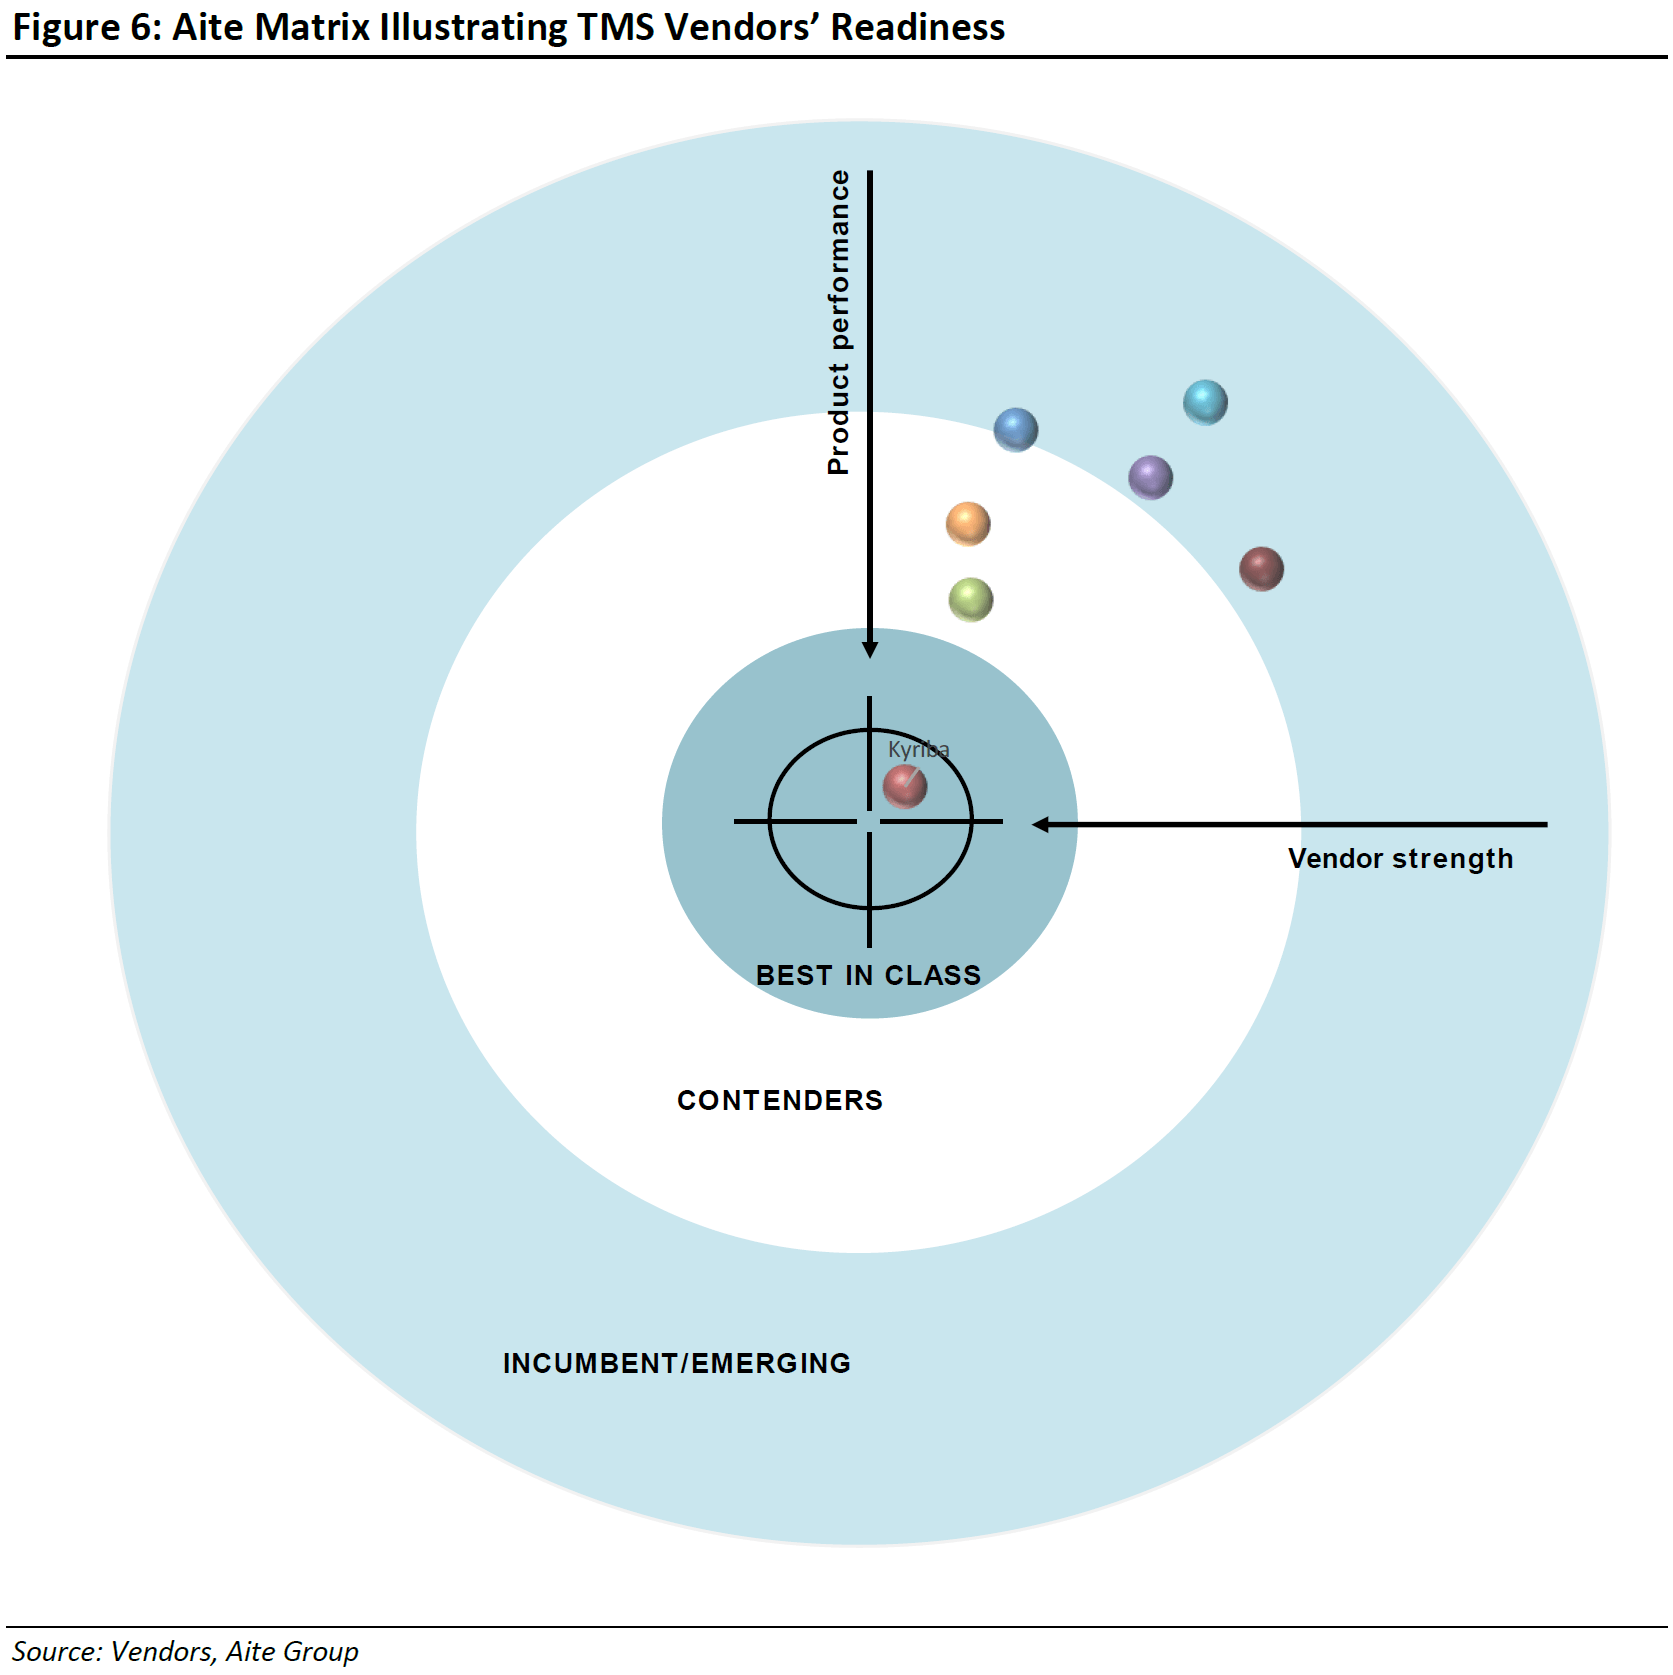 Aite Evaluation Report - Figure 6: Aite Matrix Illustrating TMS Vendors' Readiness